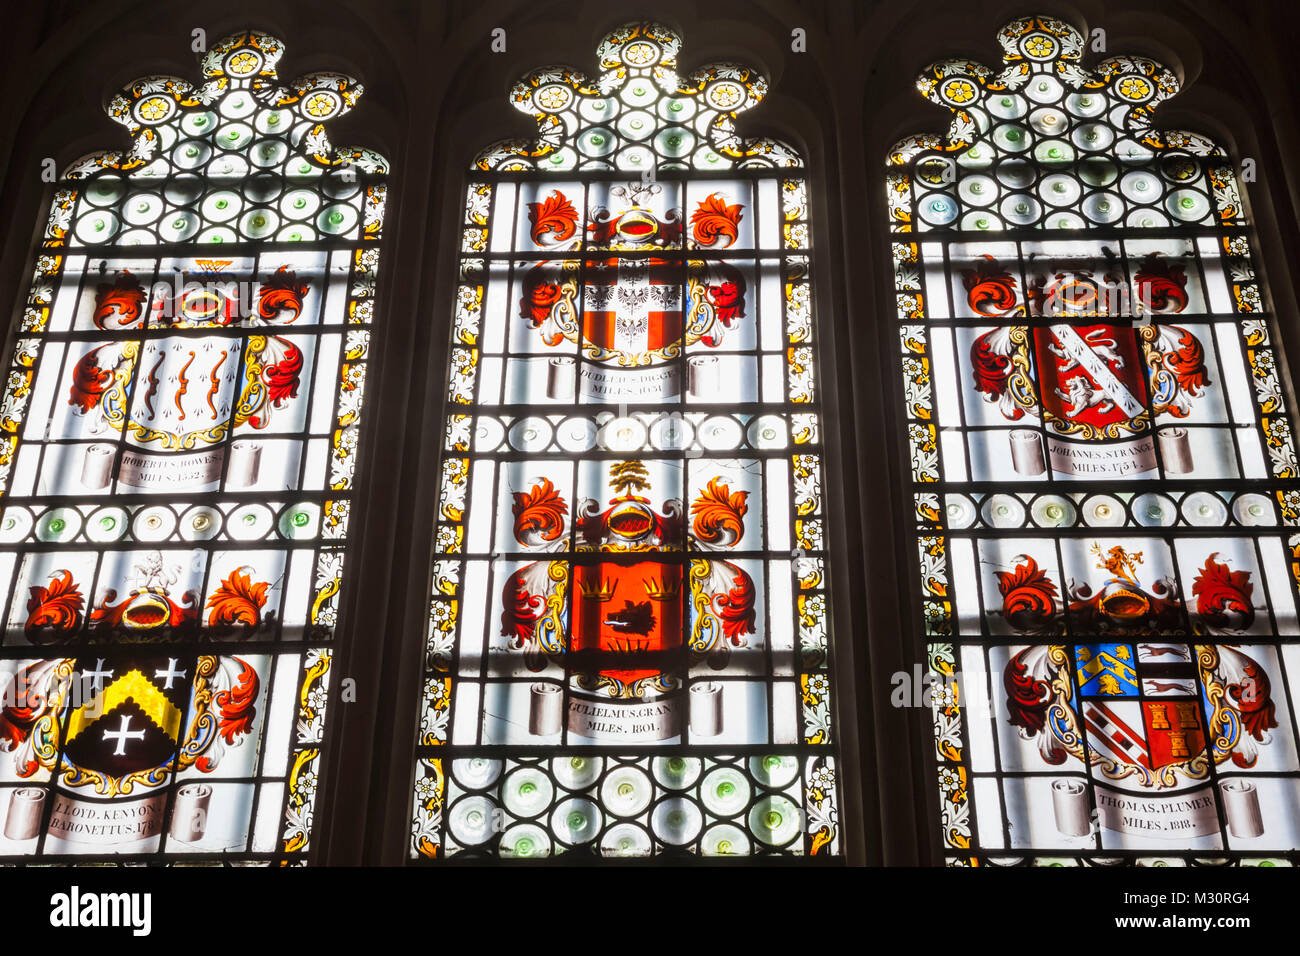 Inglaterra, Londres, la ciudad, King's College, el Maughan Biblioteca, la Sala de Weston, Vidriera representando los escudos de armas de los anteriores dueños de los rodillos Foto de stock